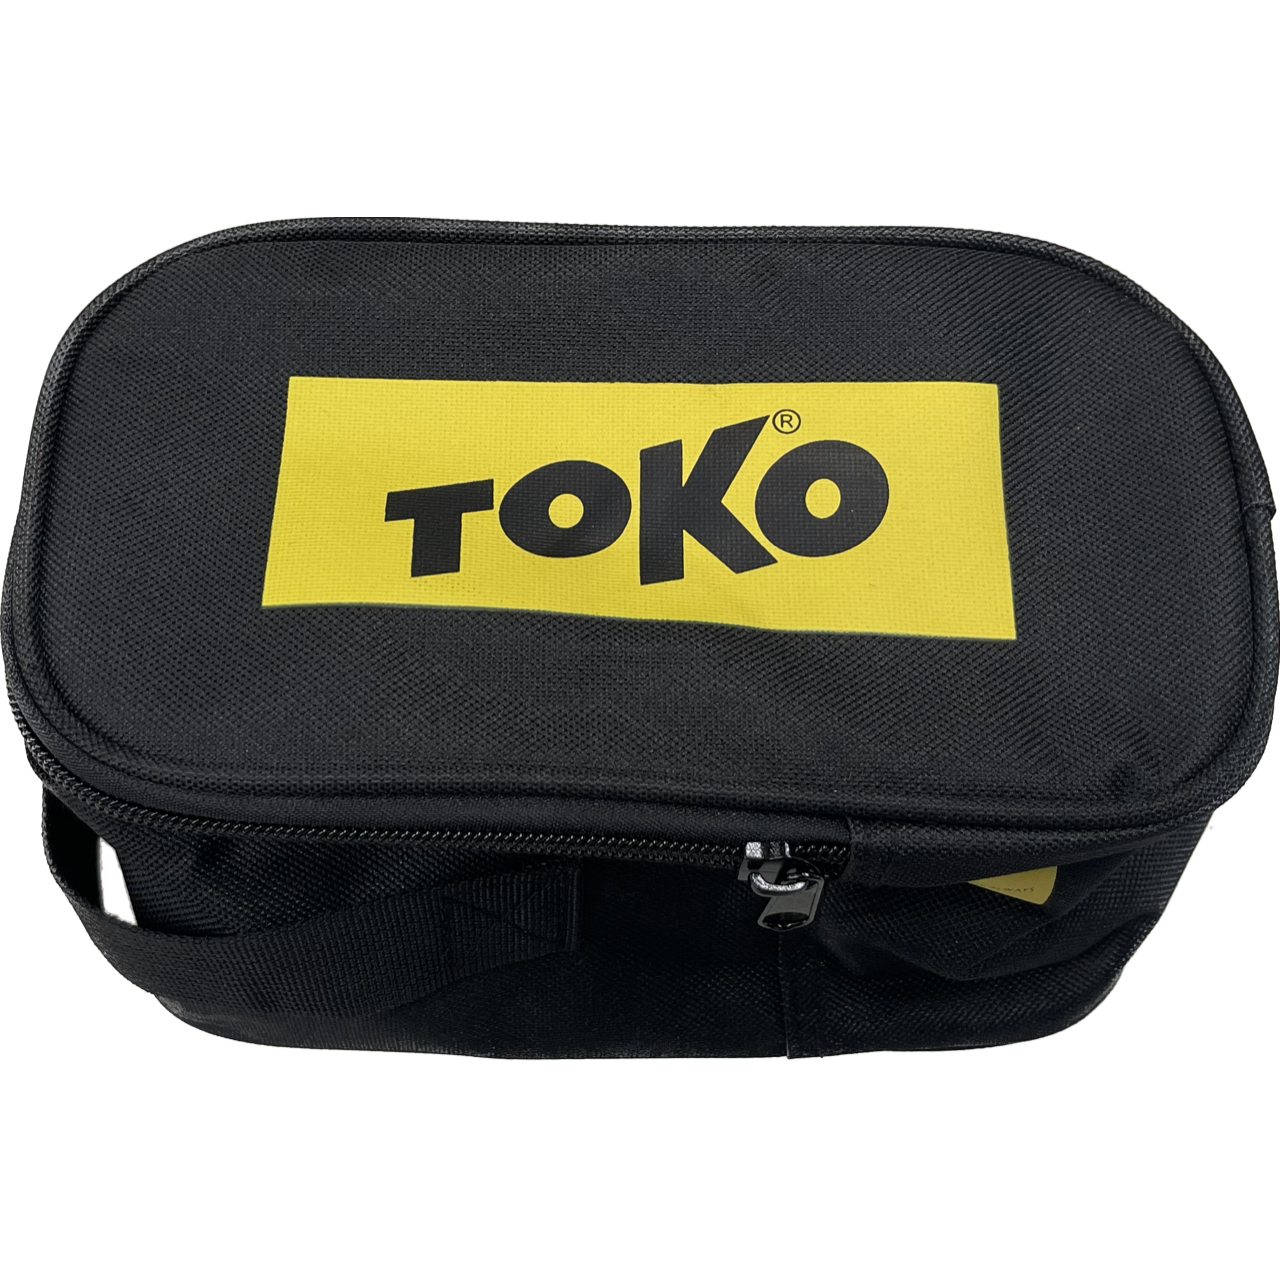 Toko Carrying Bag